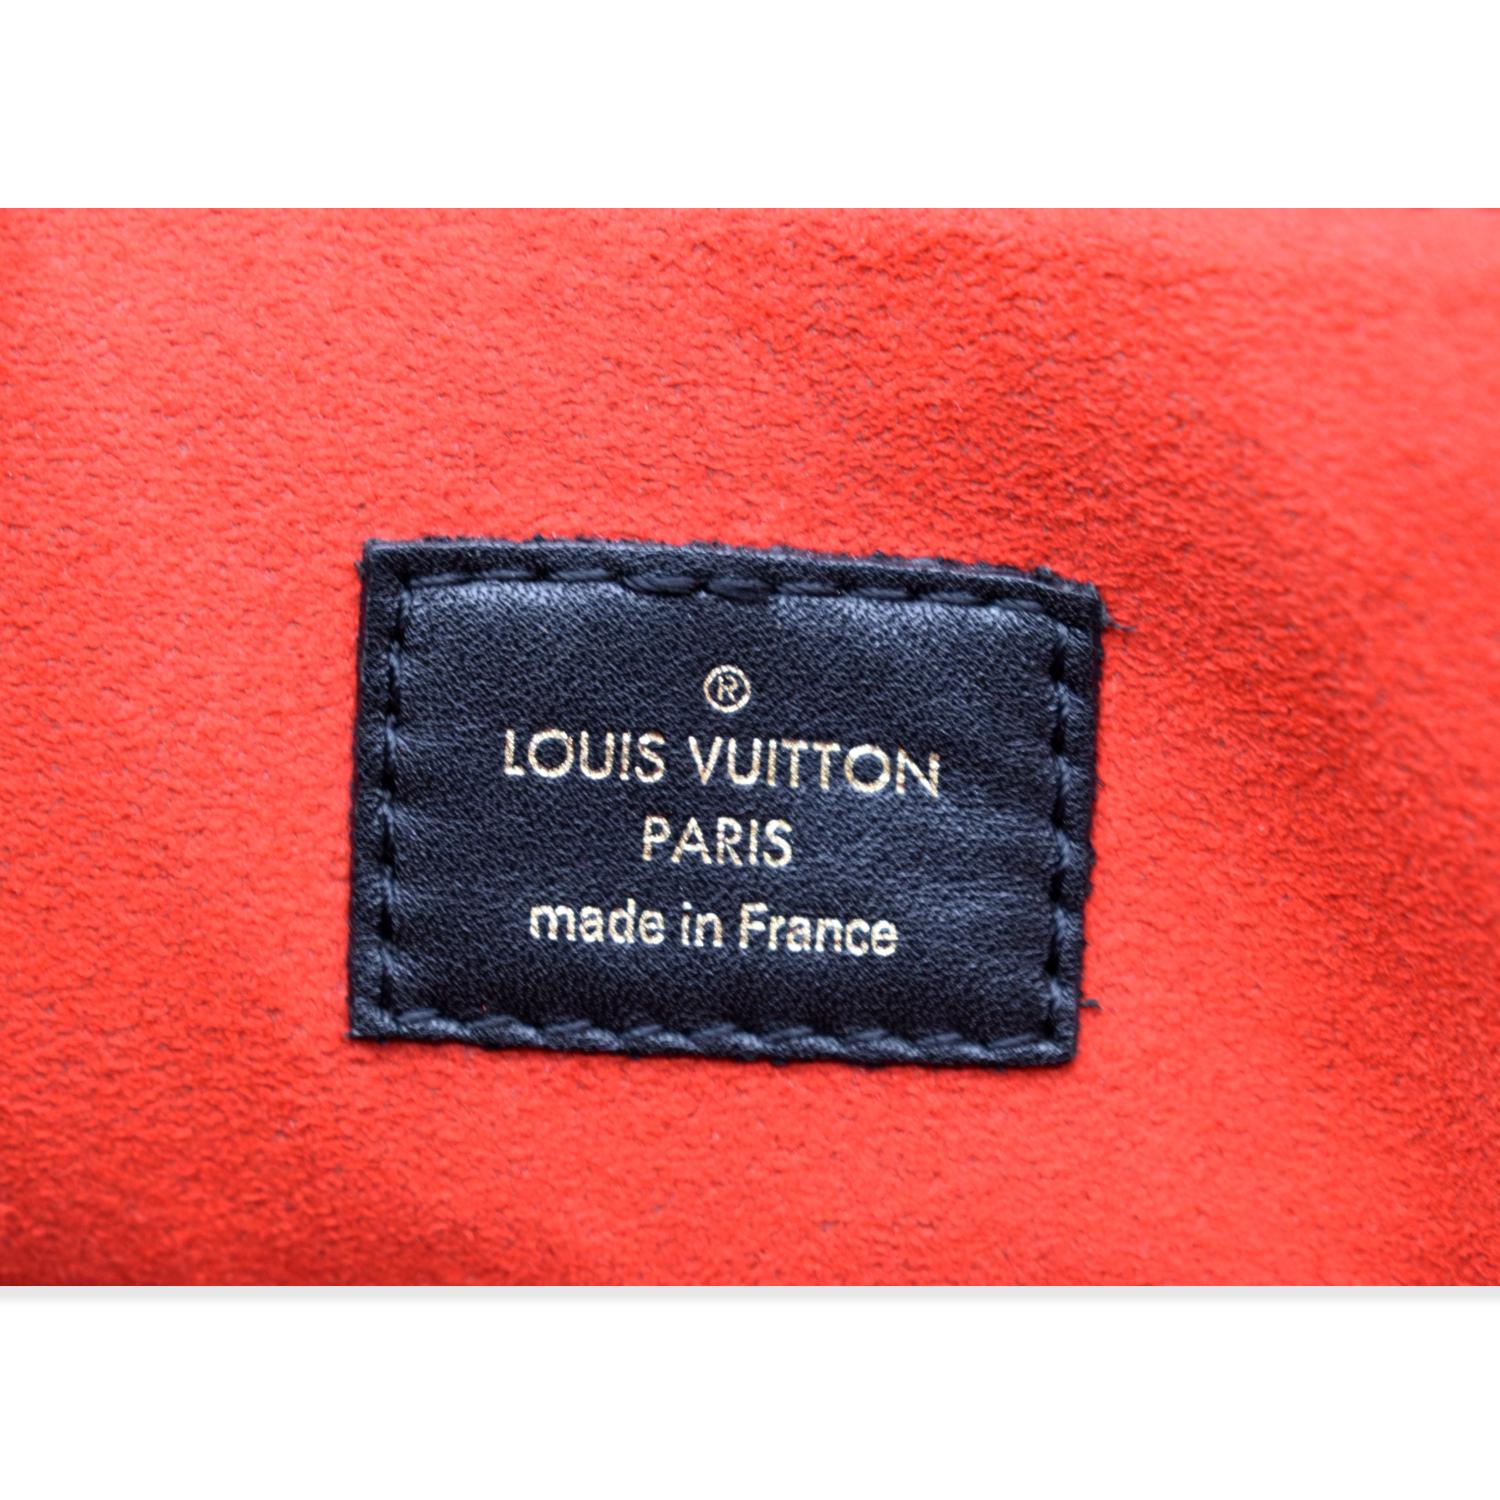 Besace - Tuileries - ep_vintage luxury Store - Bag - M43157 – dct - Caramel  - Vuitton - Louis Vuitton Womens New Arrivals - Monogram - 2Way - Louis